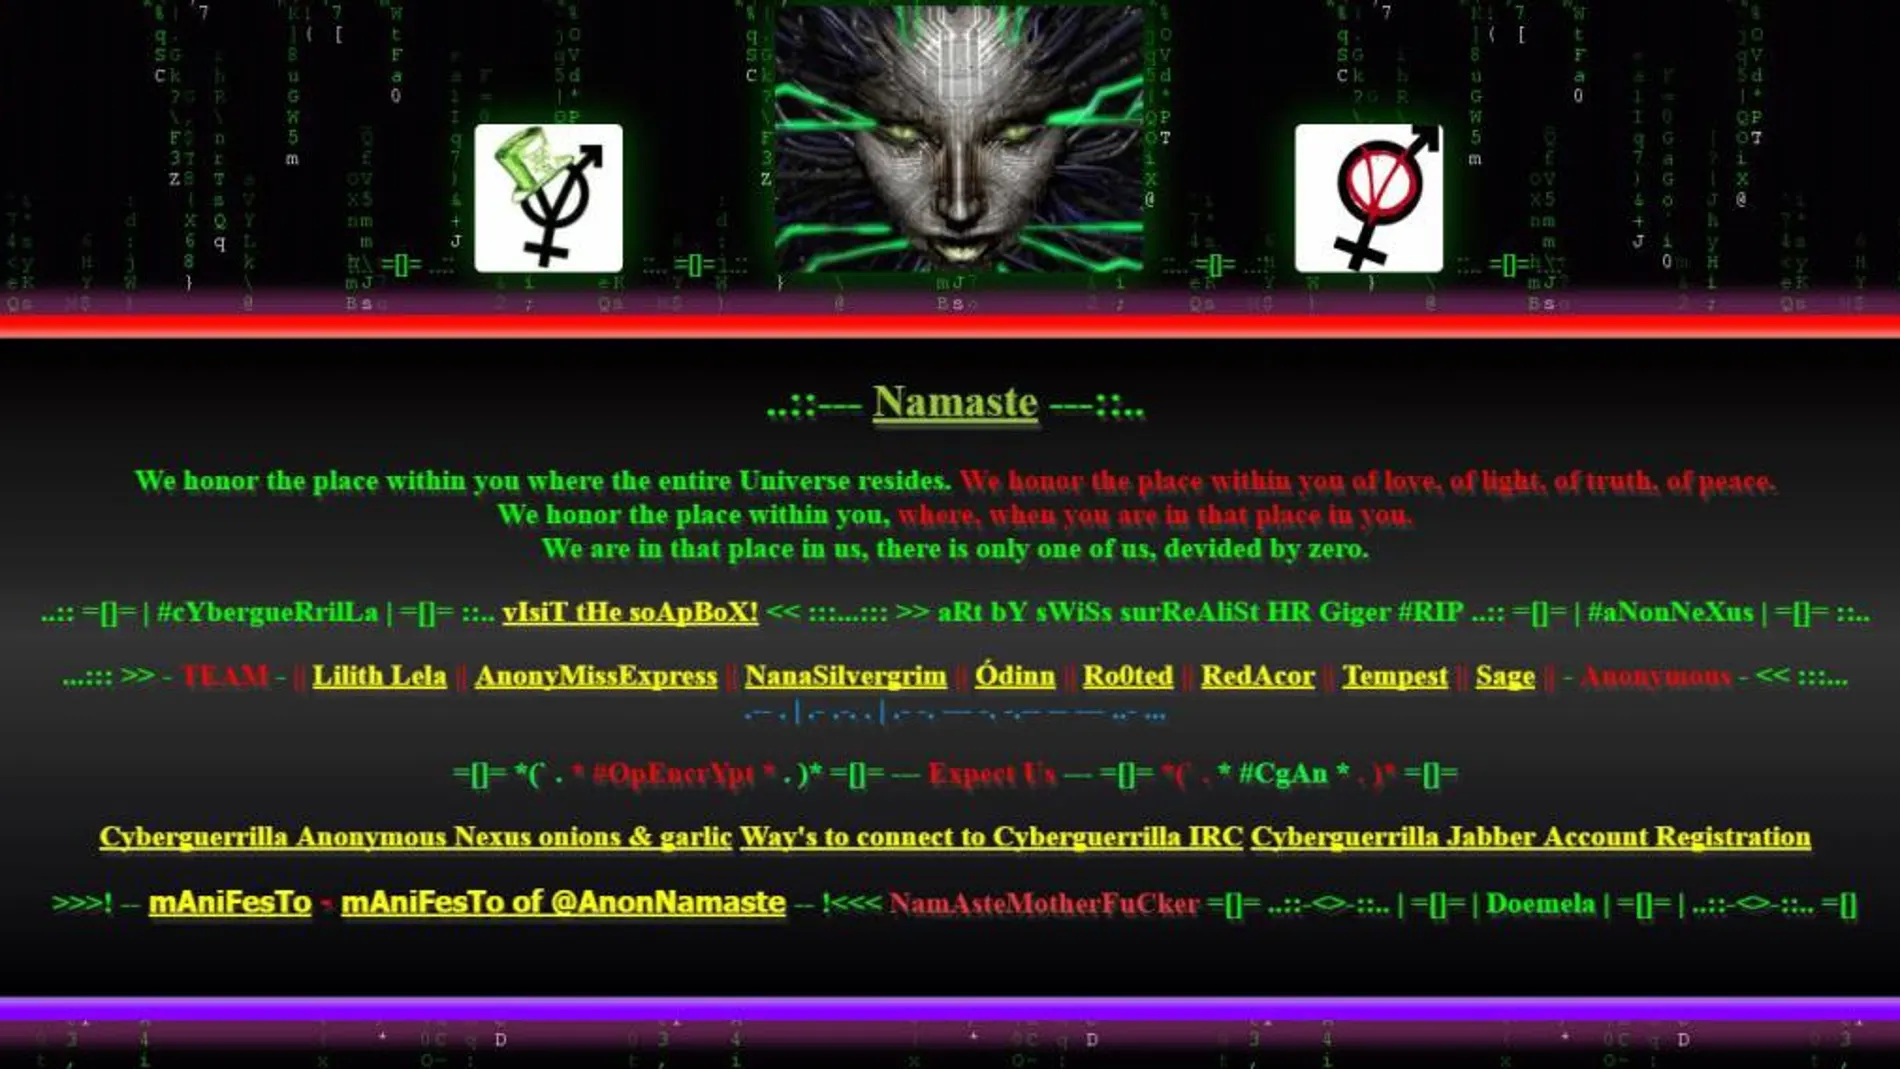 La página de Internet cyberguerrilla.org donde se ha publicado la información robada